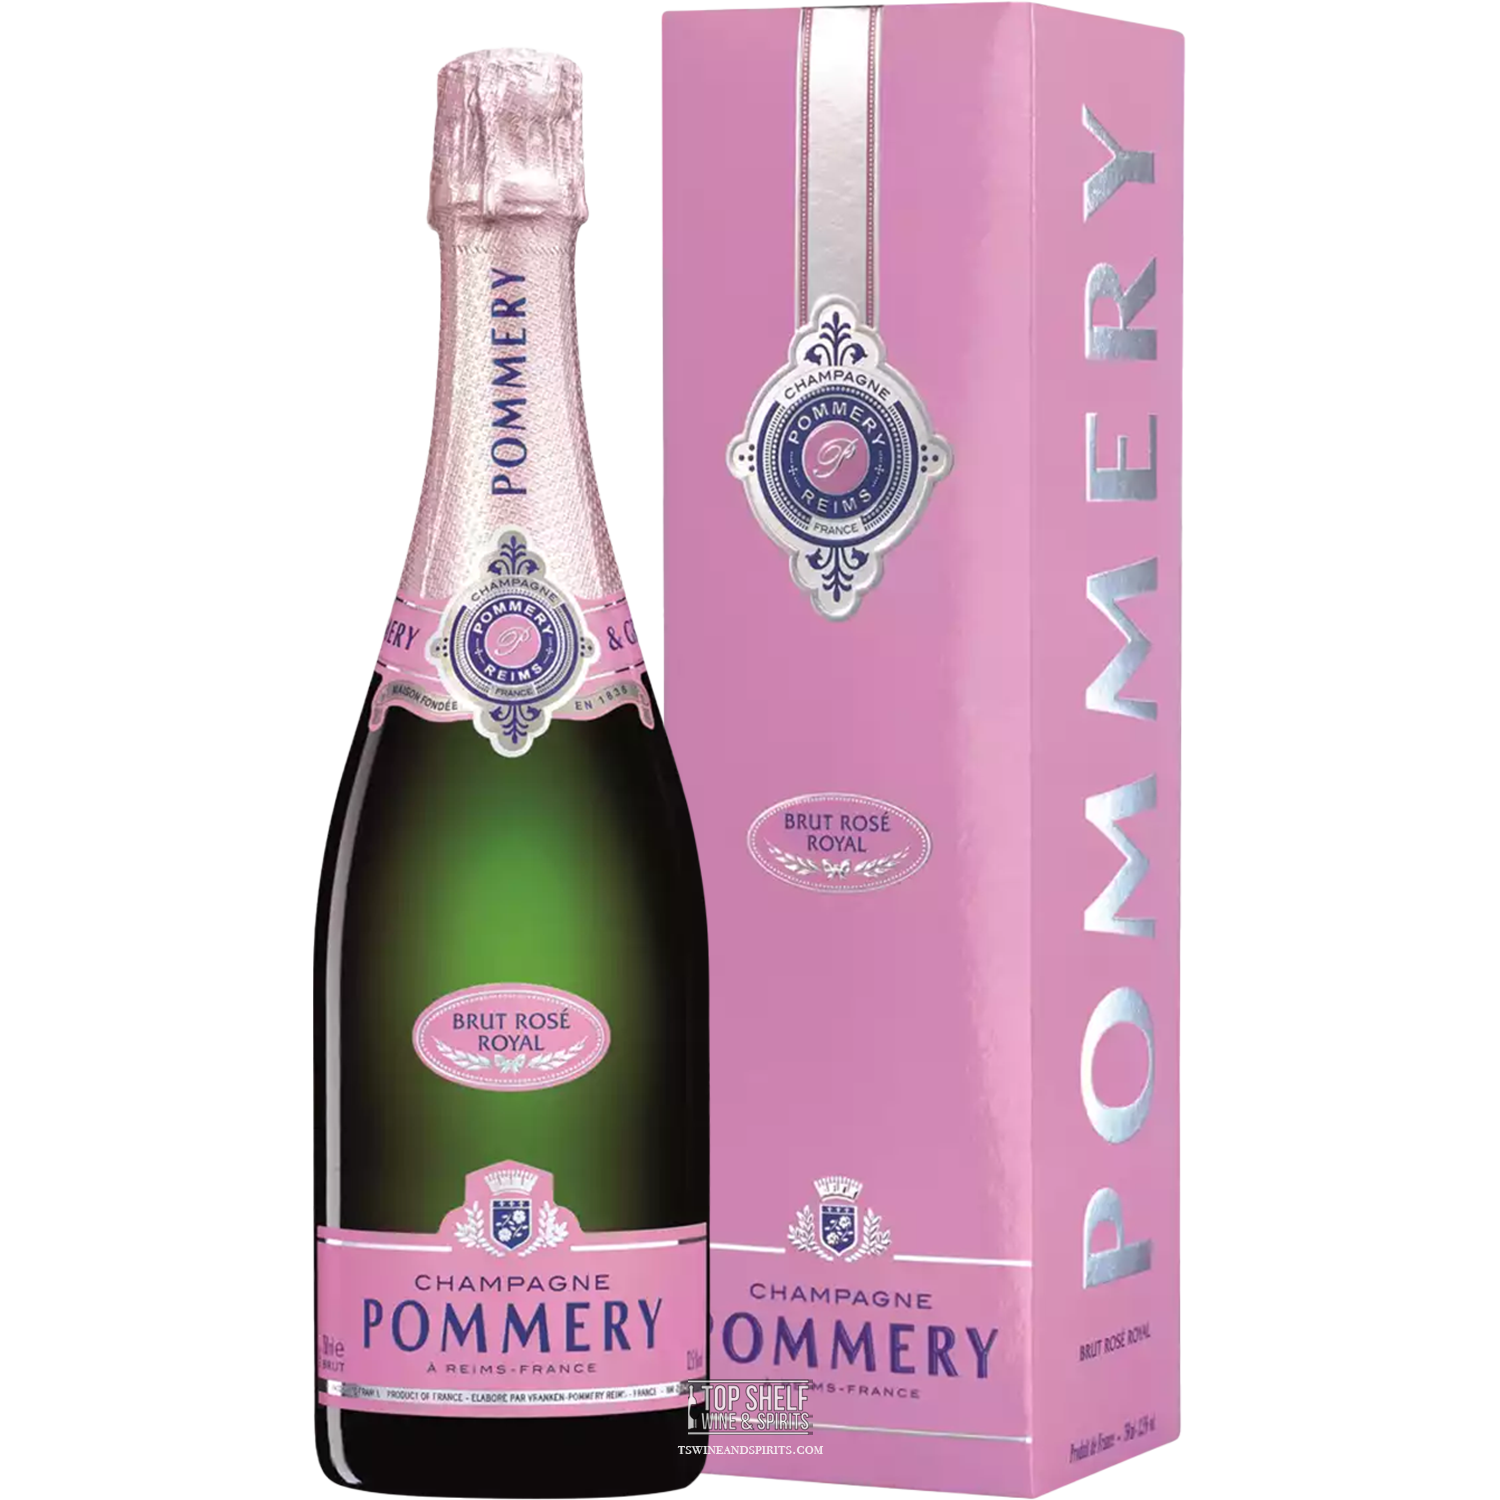 Pommery Brut Rosé Royal Champagne